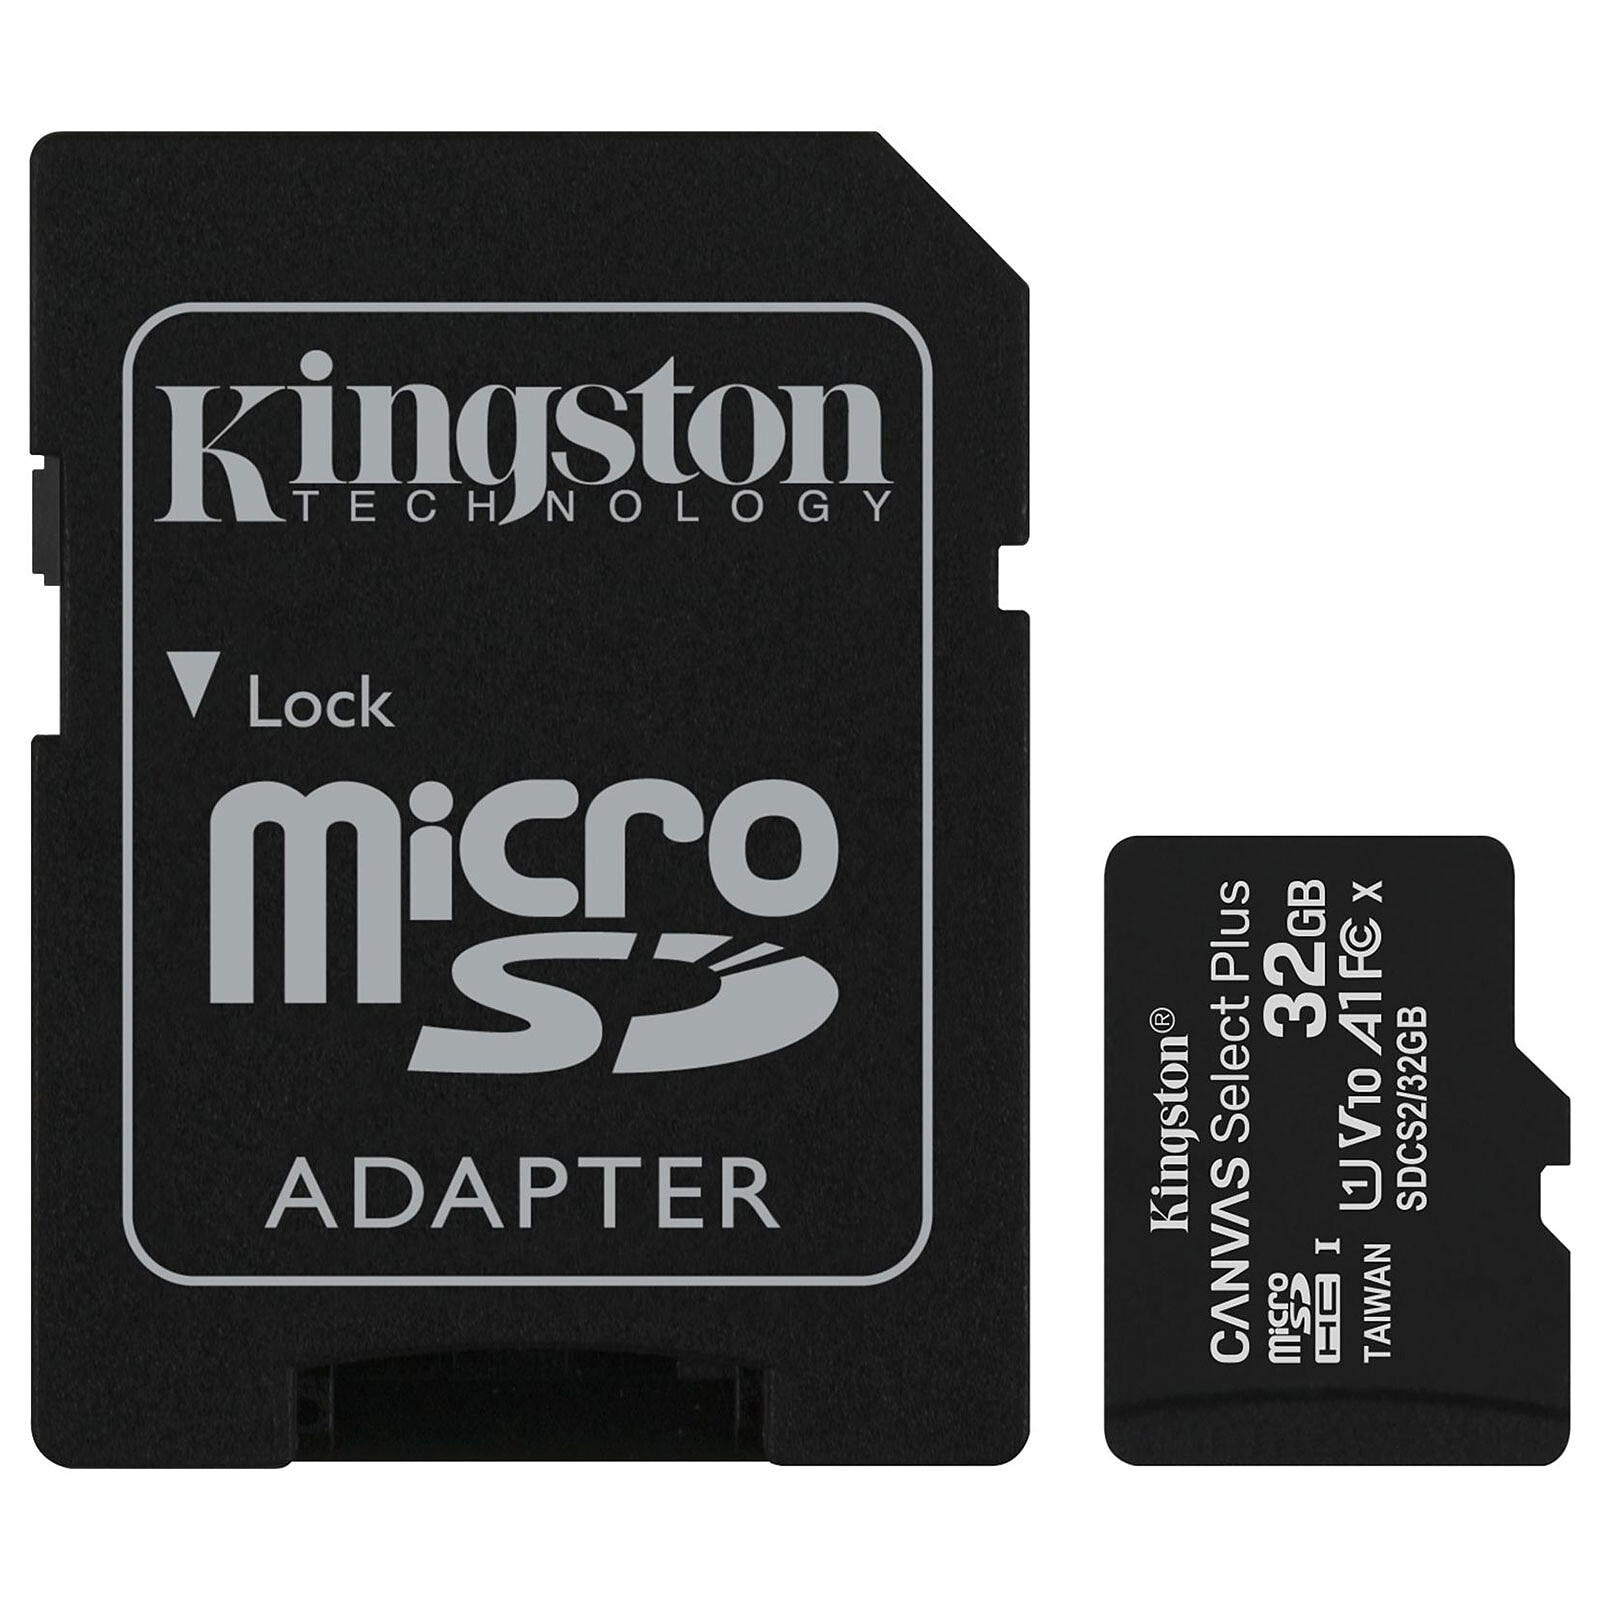 CARTE MICRO SD Kingston Micro SD 32Go - SDCS2/32GB